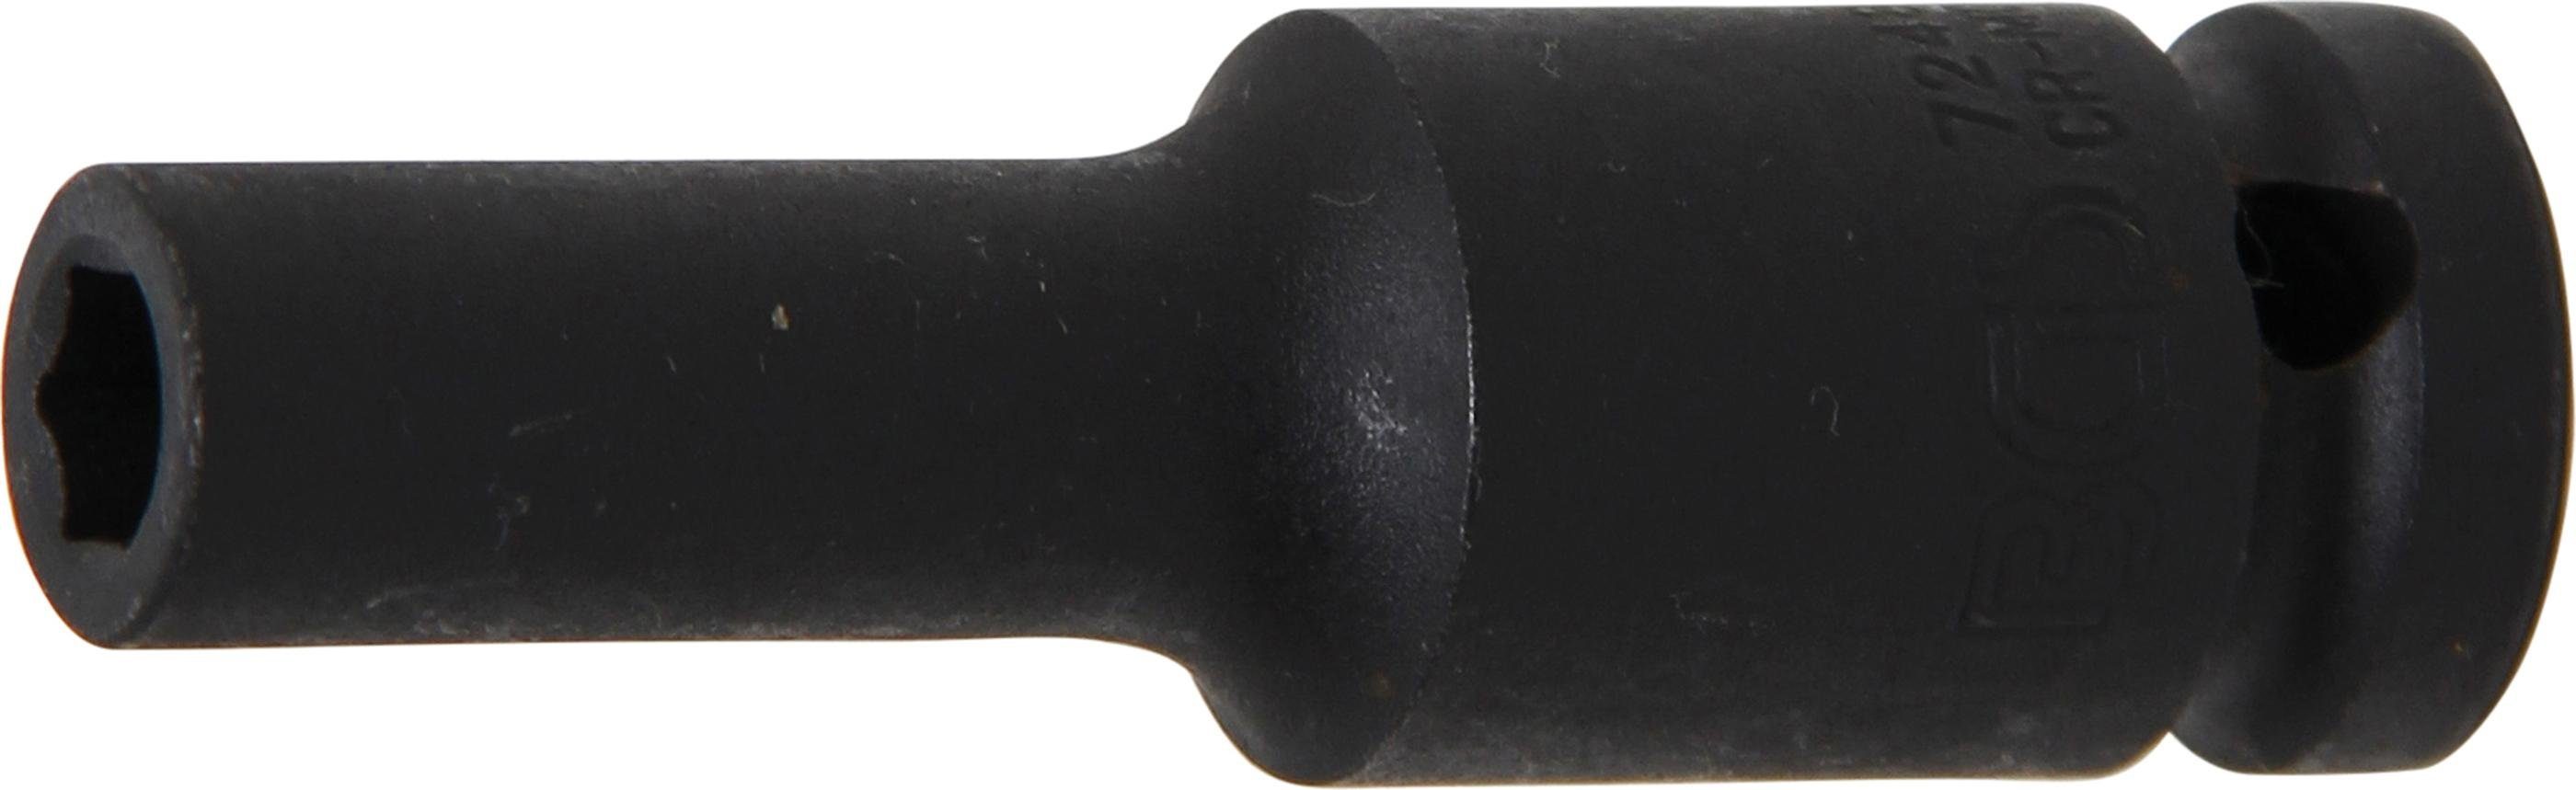 Sechskant, tief, Innenvierkant Kraft-Steckschlüssel-Einsatz BGS Antrieb SW 12,5 (1/2), mm 8 mm technic Steckschlüssel